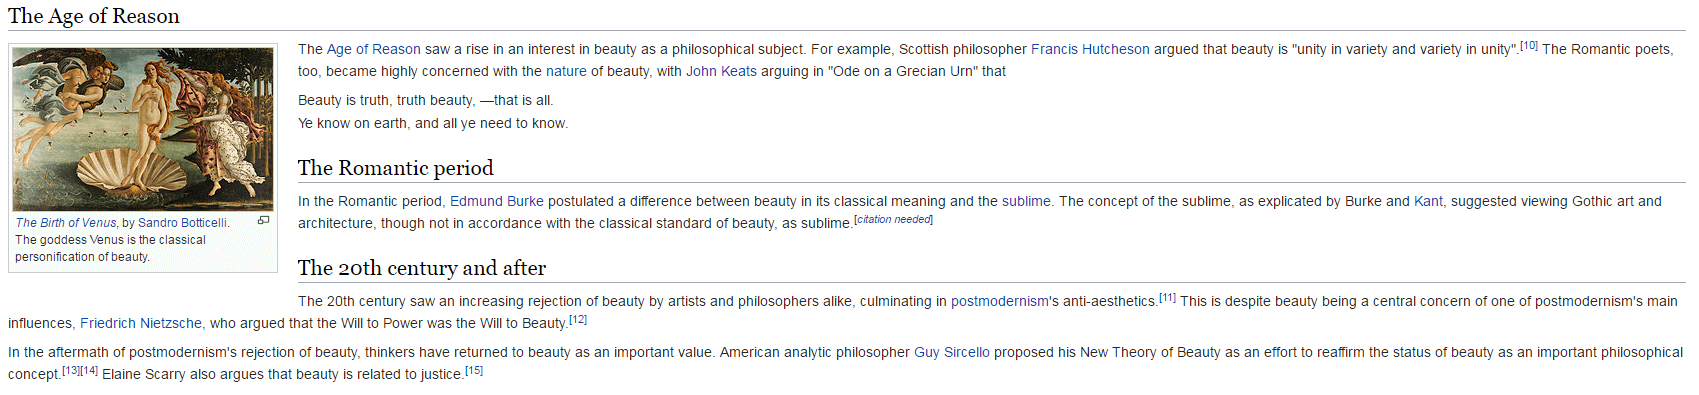 Estratto dell’articolo originario di Wikipedia sul tema della bellezza (“Beauty”)